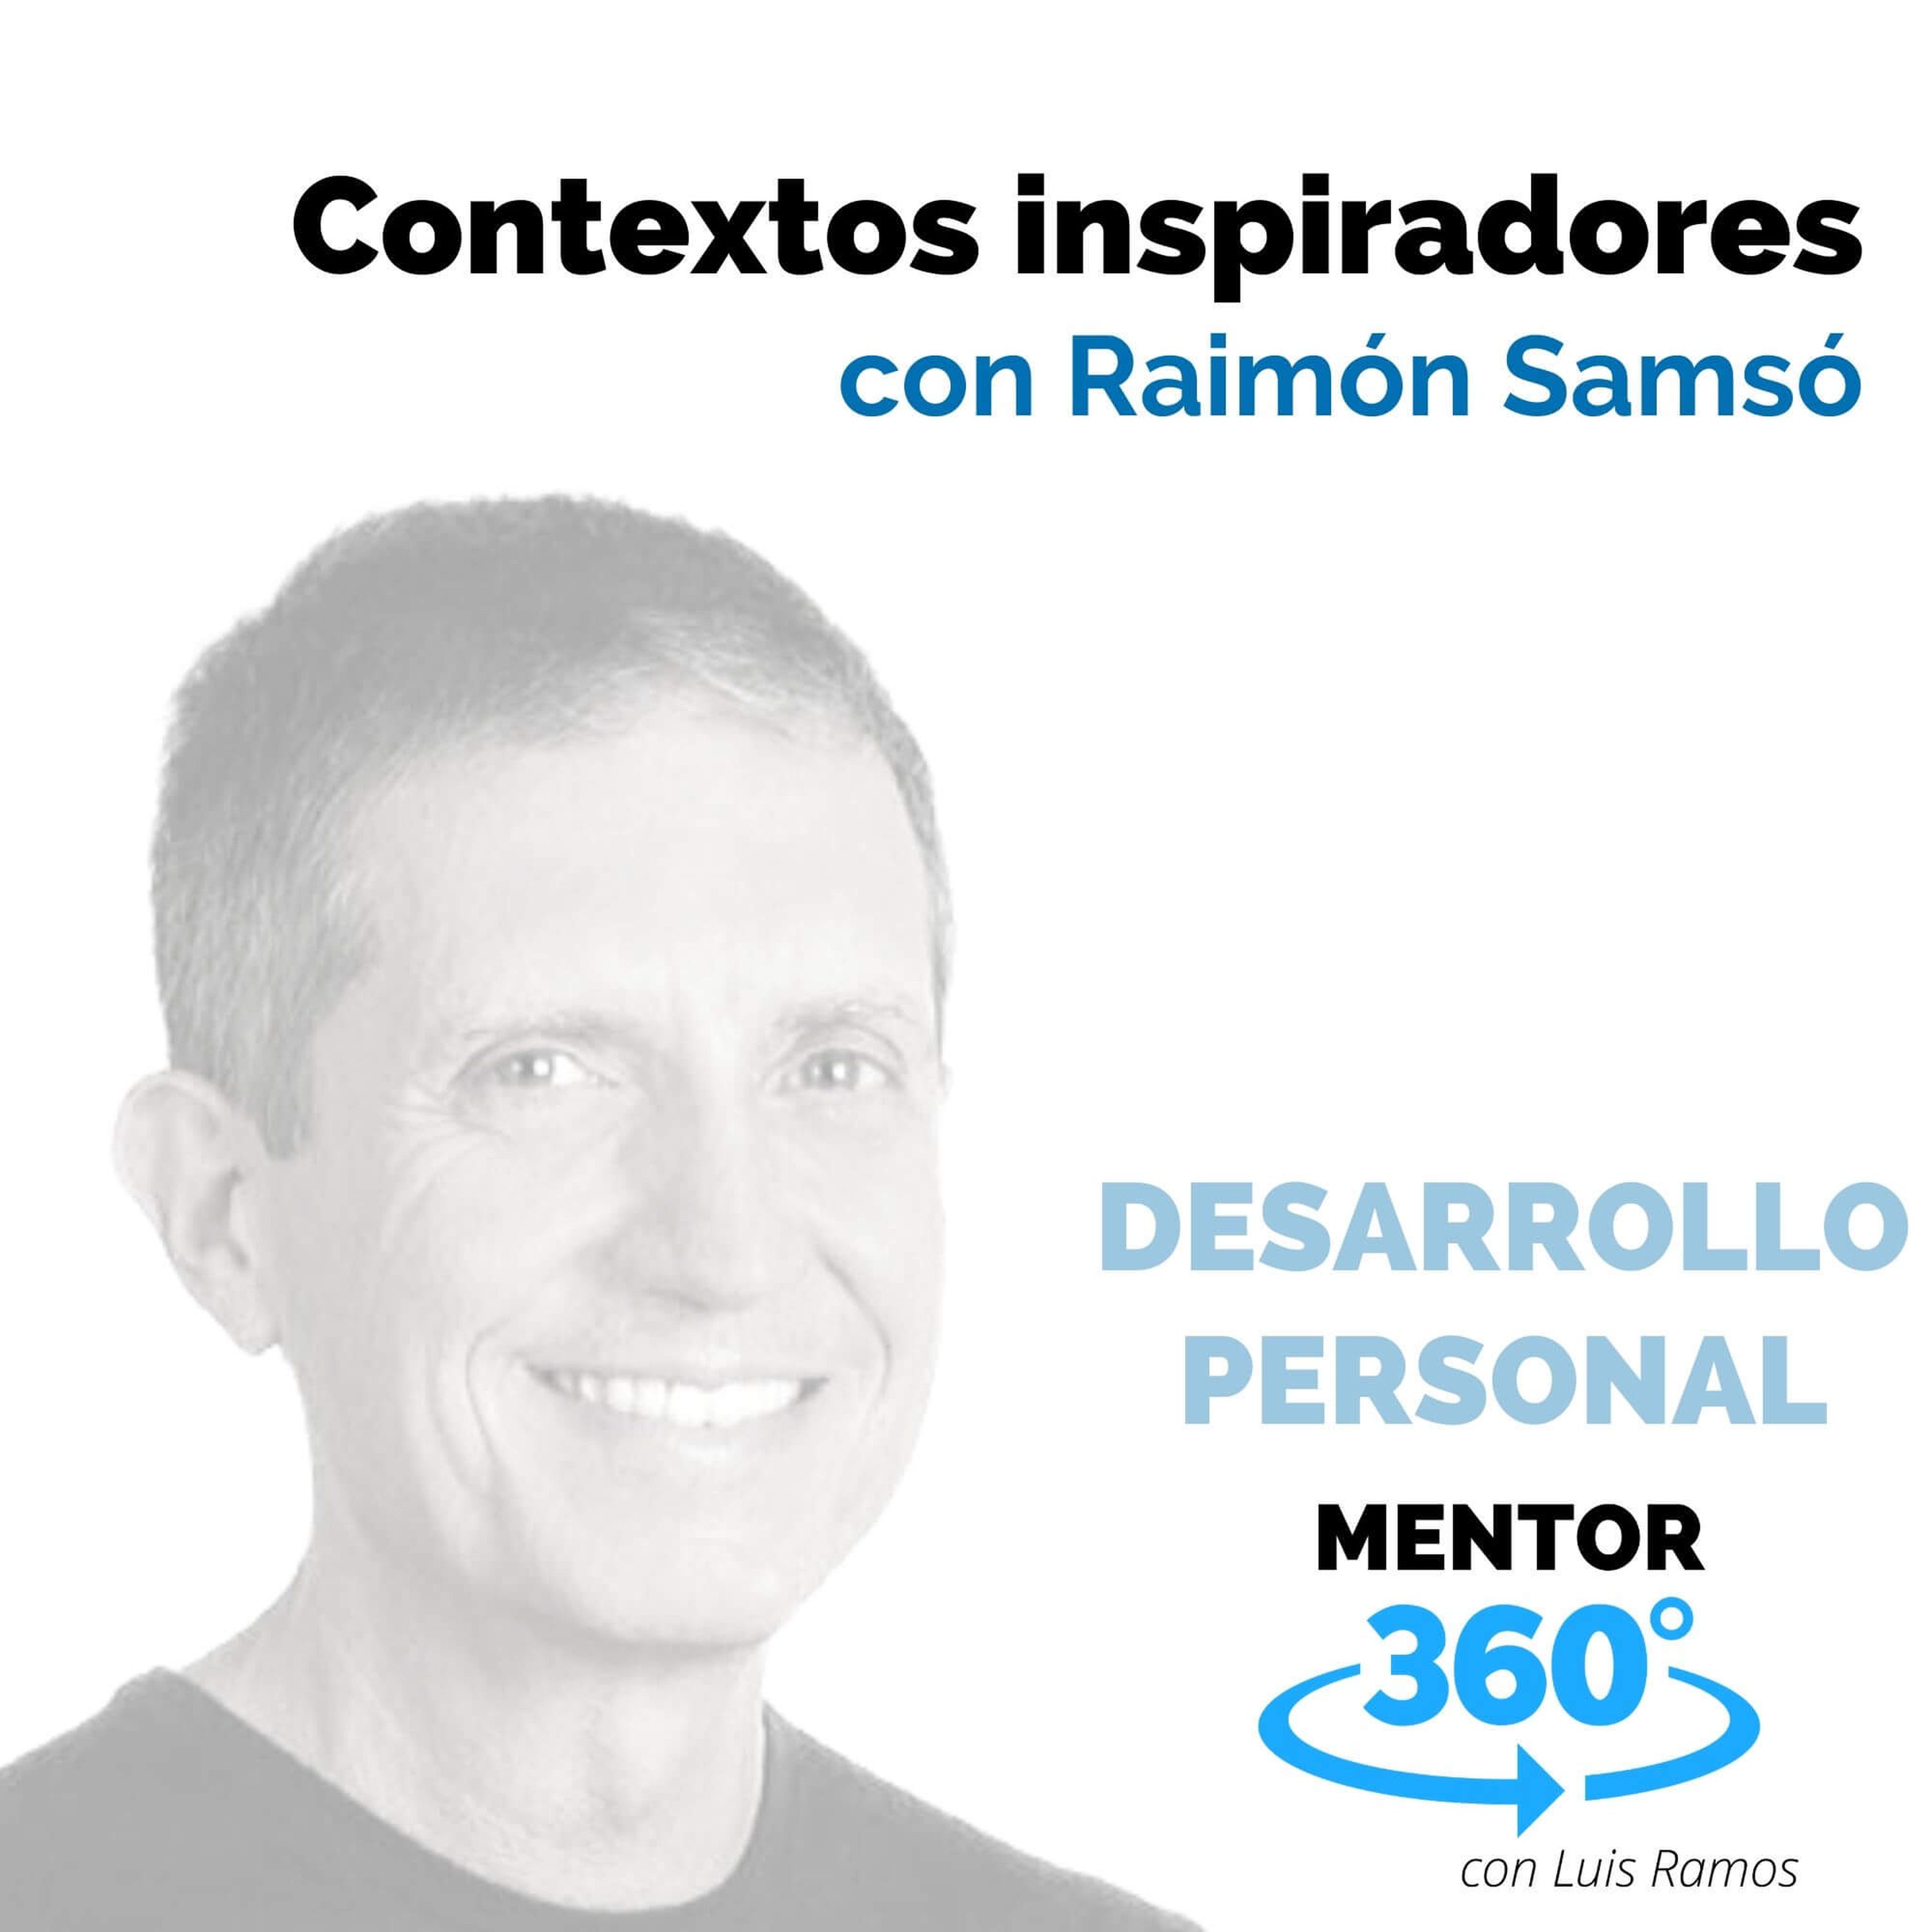 Contextos inspiradores, con Raimón Samsó - DESARROLLO PERSONAL